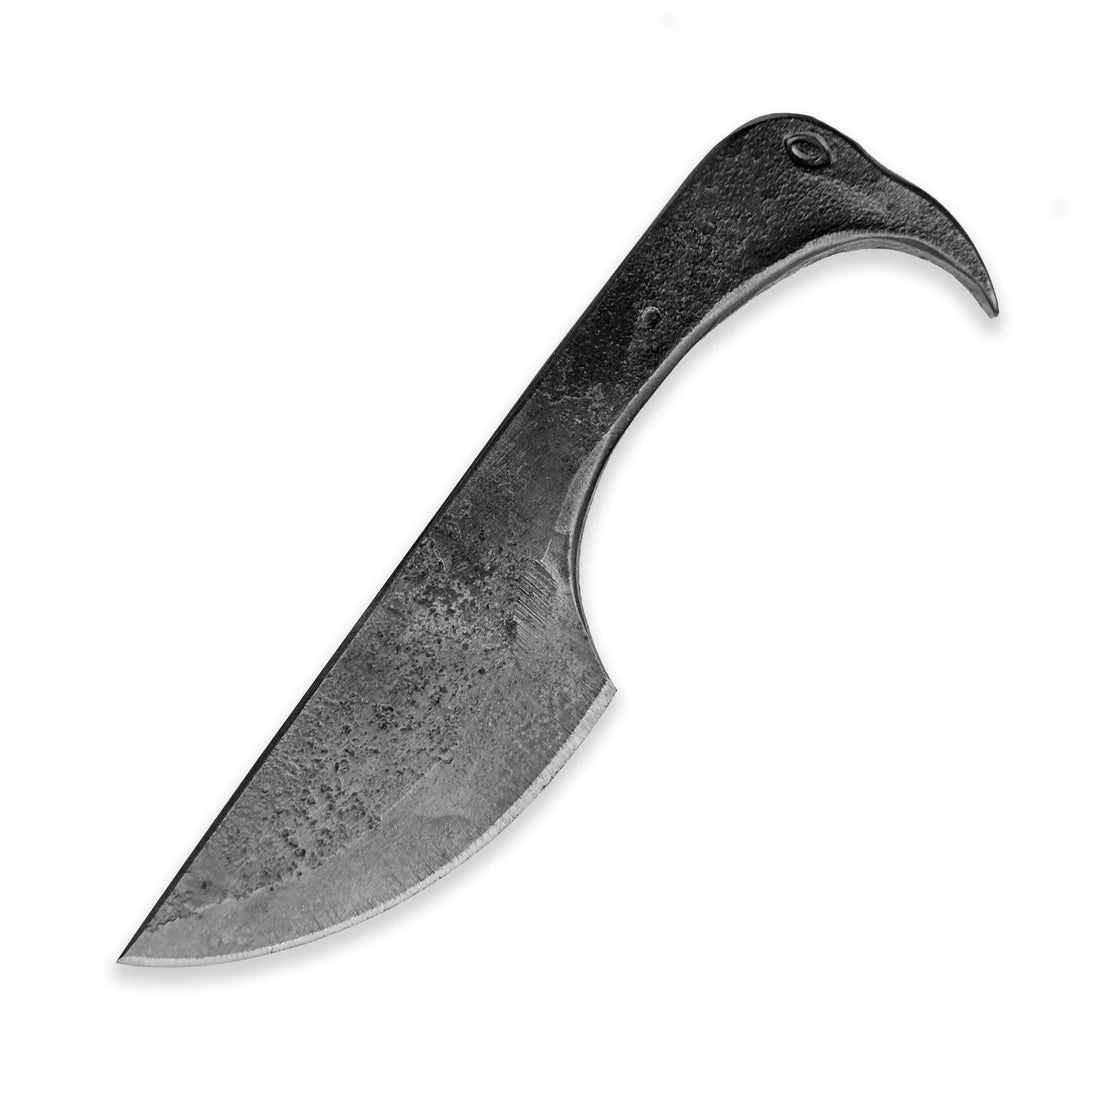 Kovaný středověký nůž Plameňák s pochvou